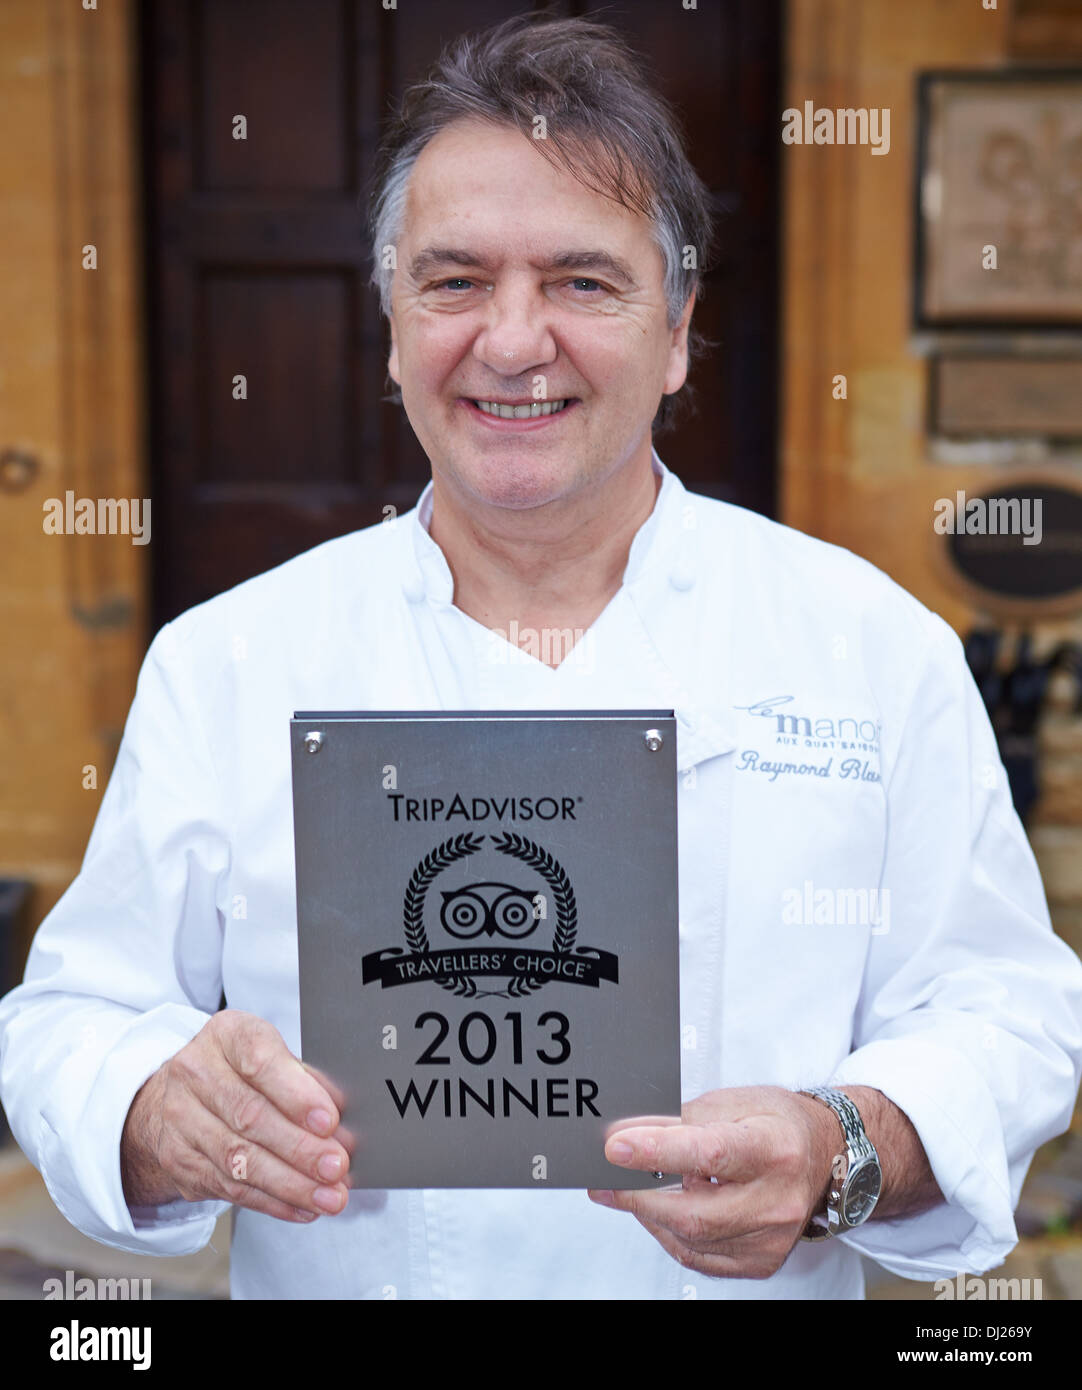 Le chef Raymond Blanc chez Le Manoir aux Quat saisons après avoir remporté un prix Choix des voyageurs de Tripadvisor Banque D'Images